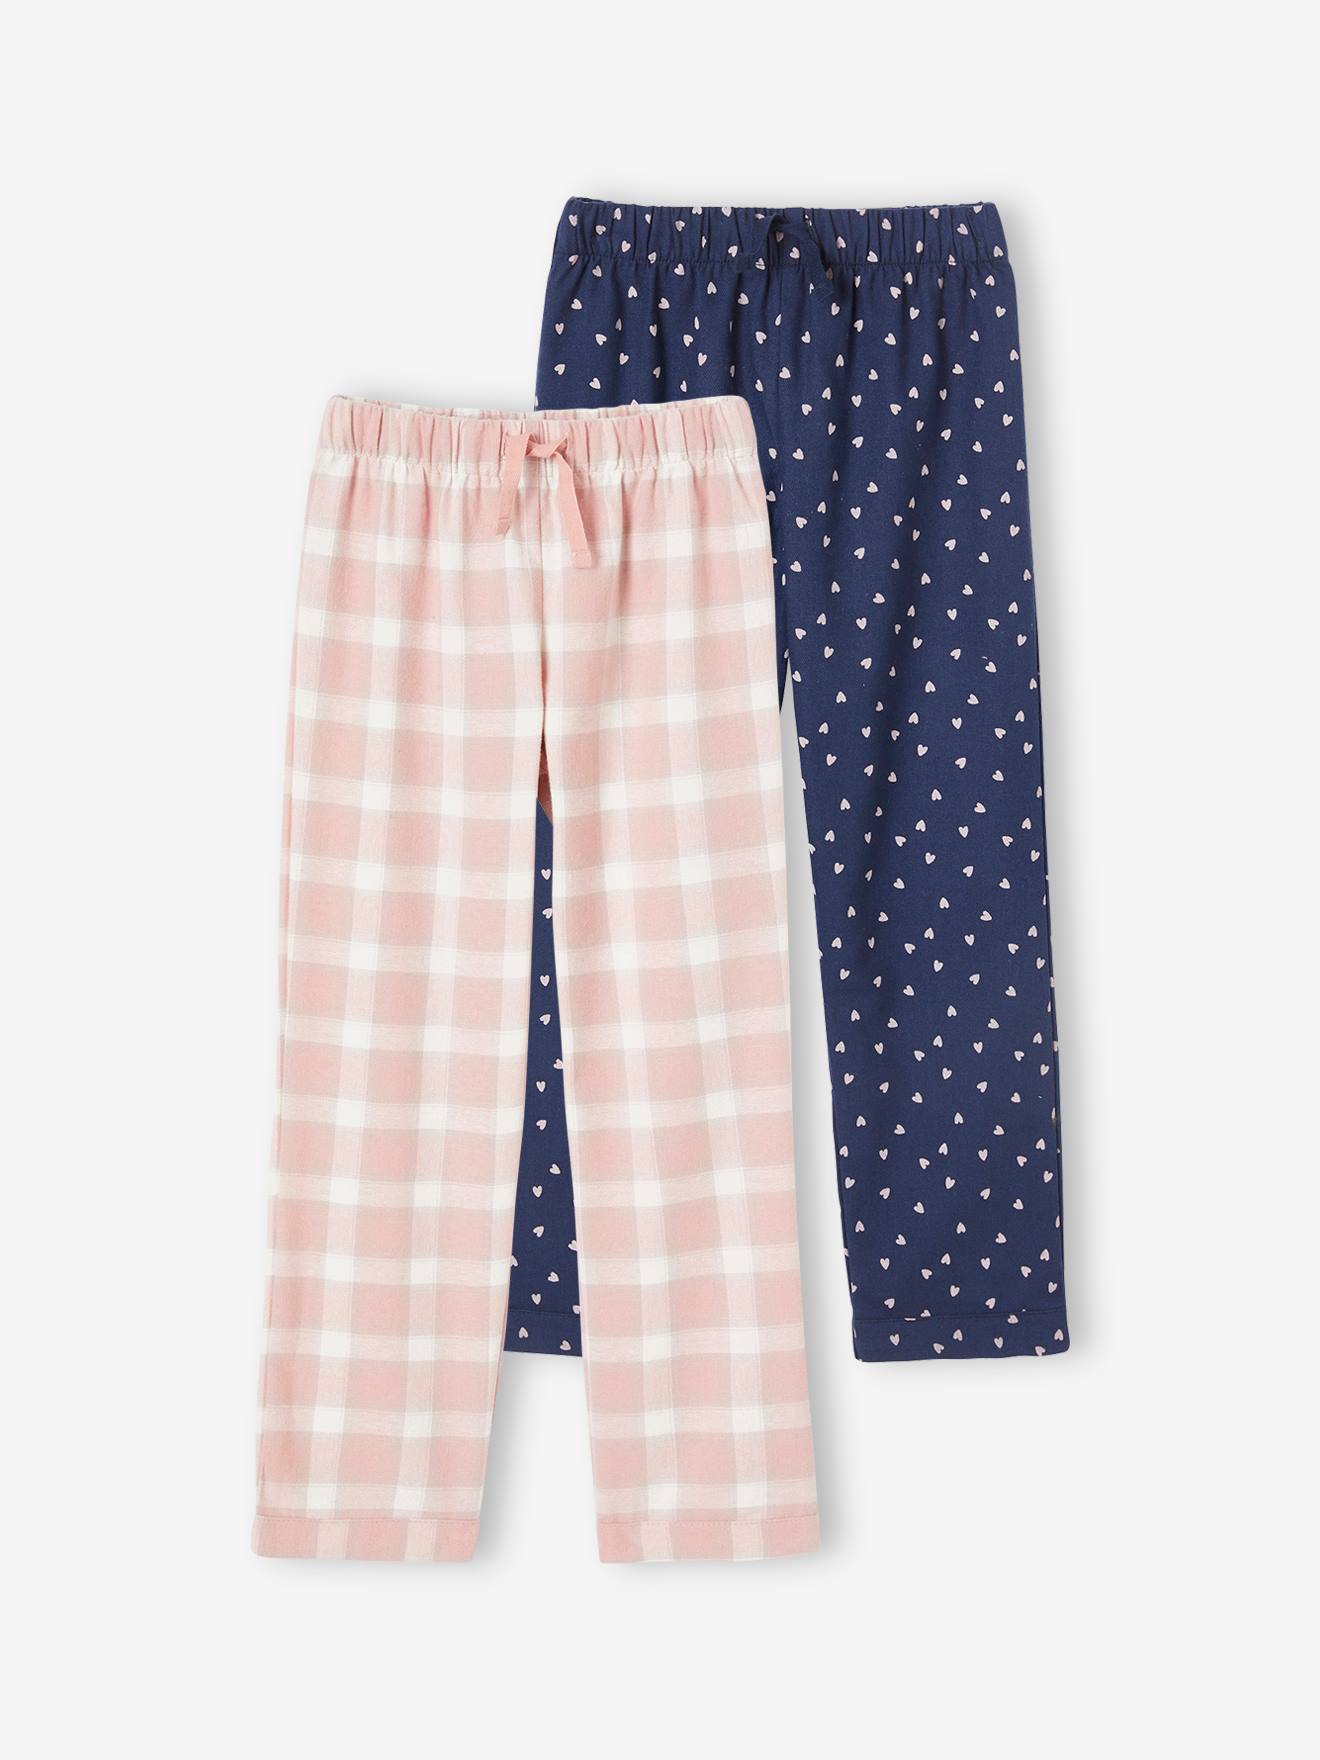 Set met 2 pyjamabroeken in flanel voor meisjes set ruitjes roze thee en blauw